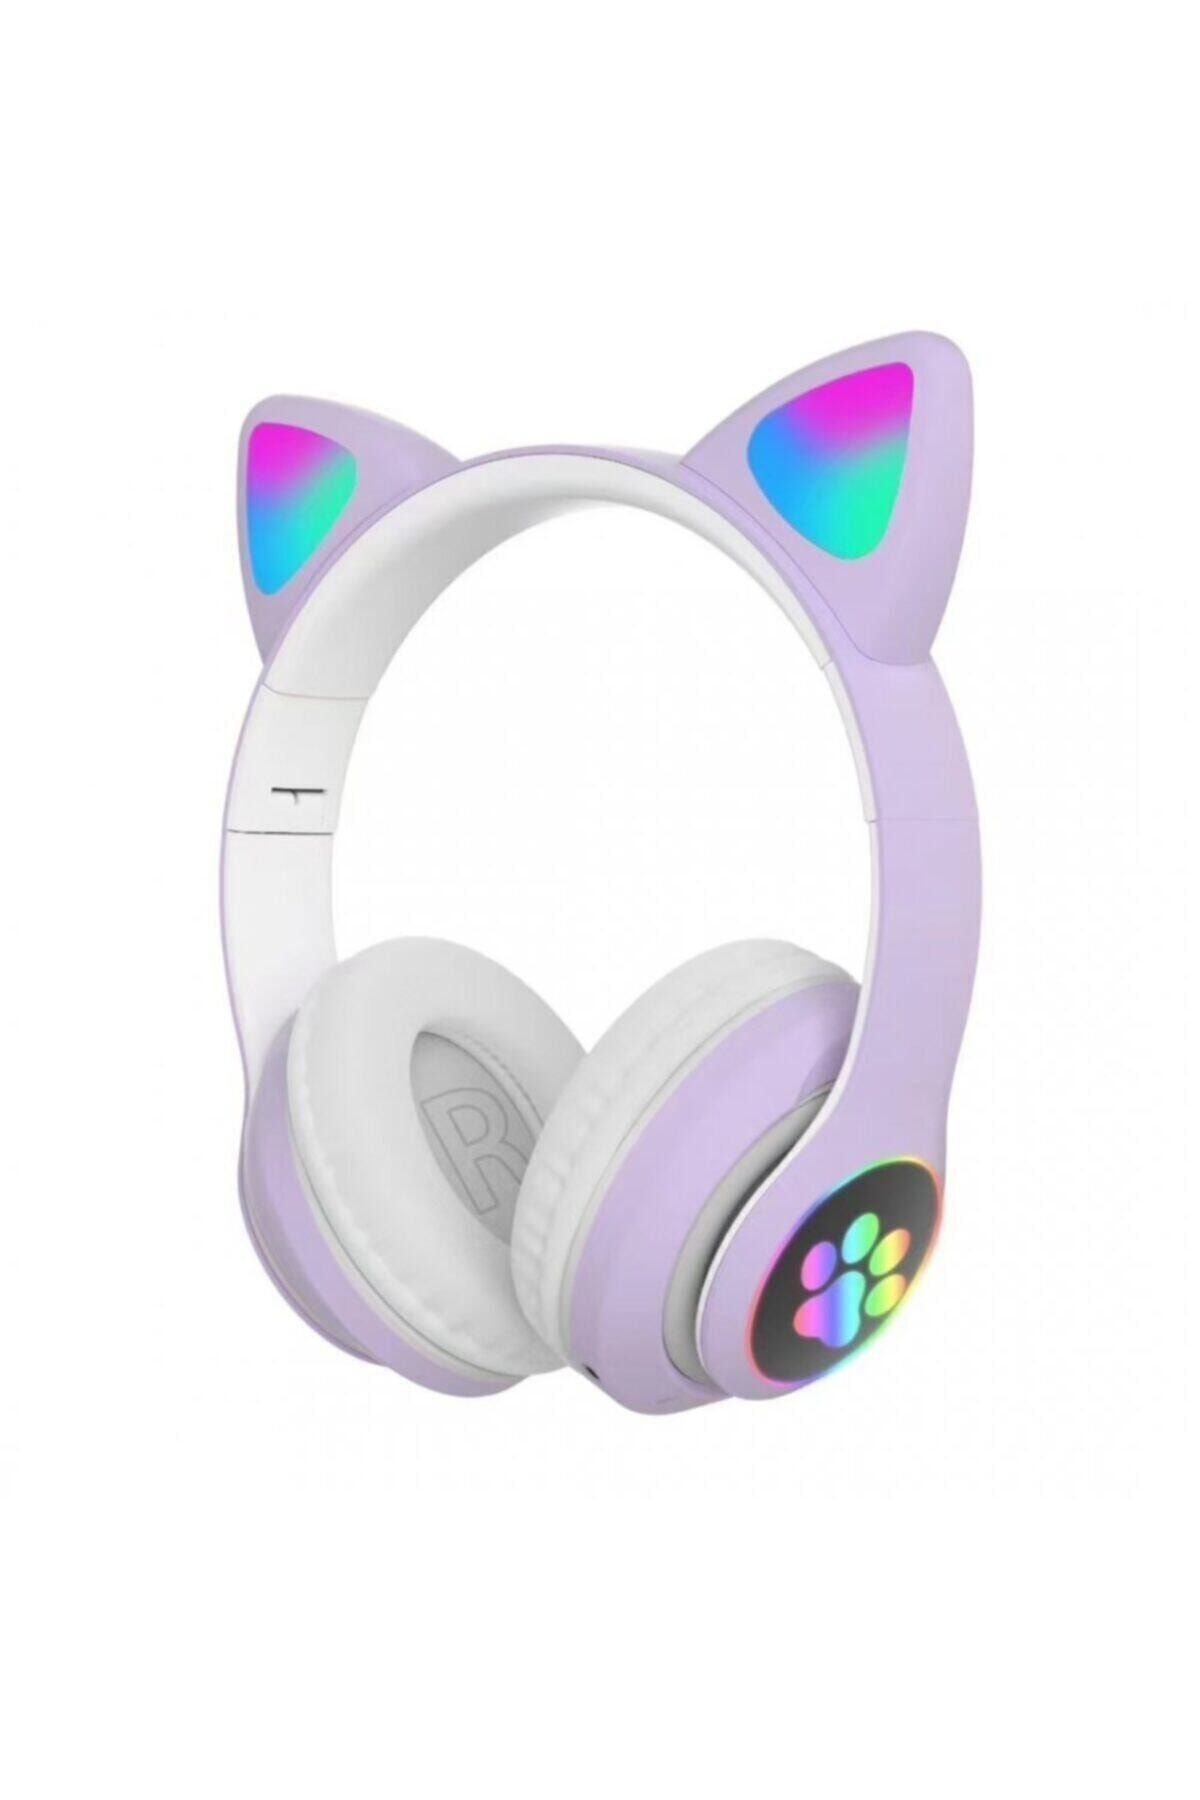 Doatech Kablosuz Kedi Kulaklık Işıklı Kulaküstü Mikrofonlu Bluetooth Hafıza Kartı Girişli Çocuk Kulaklığı